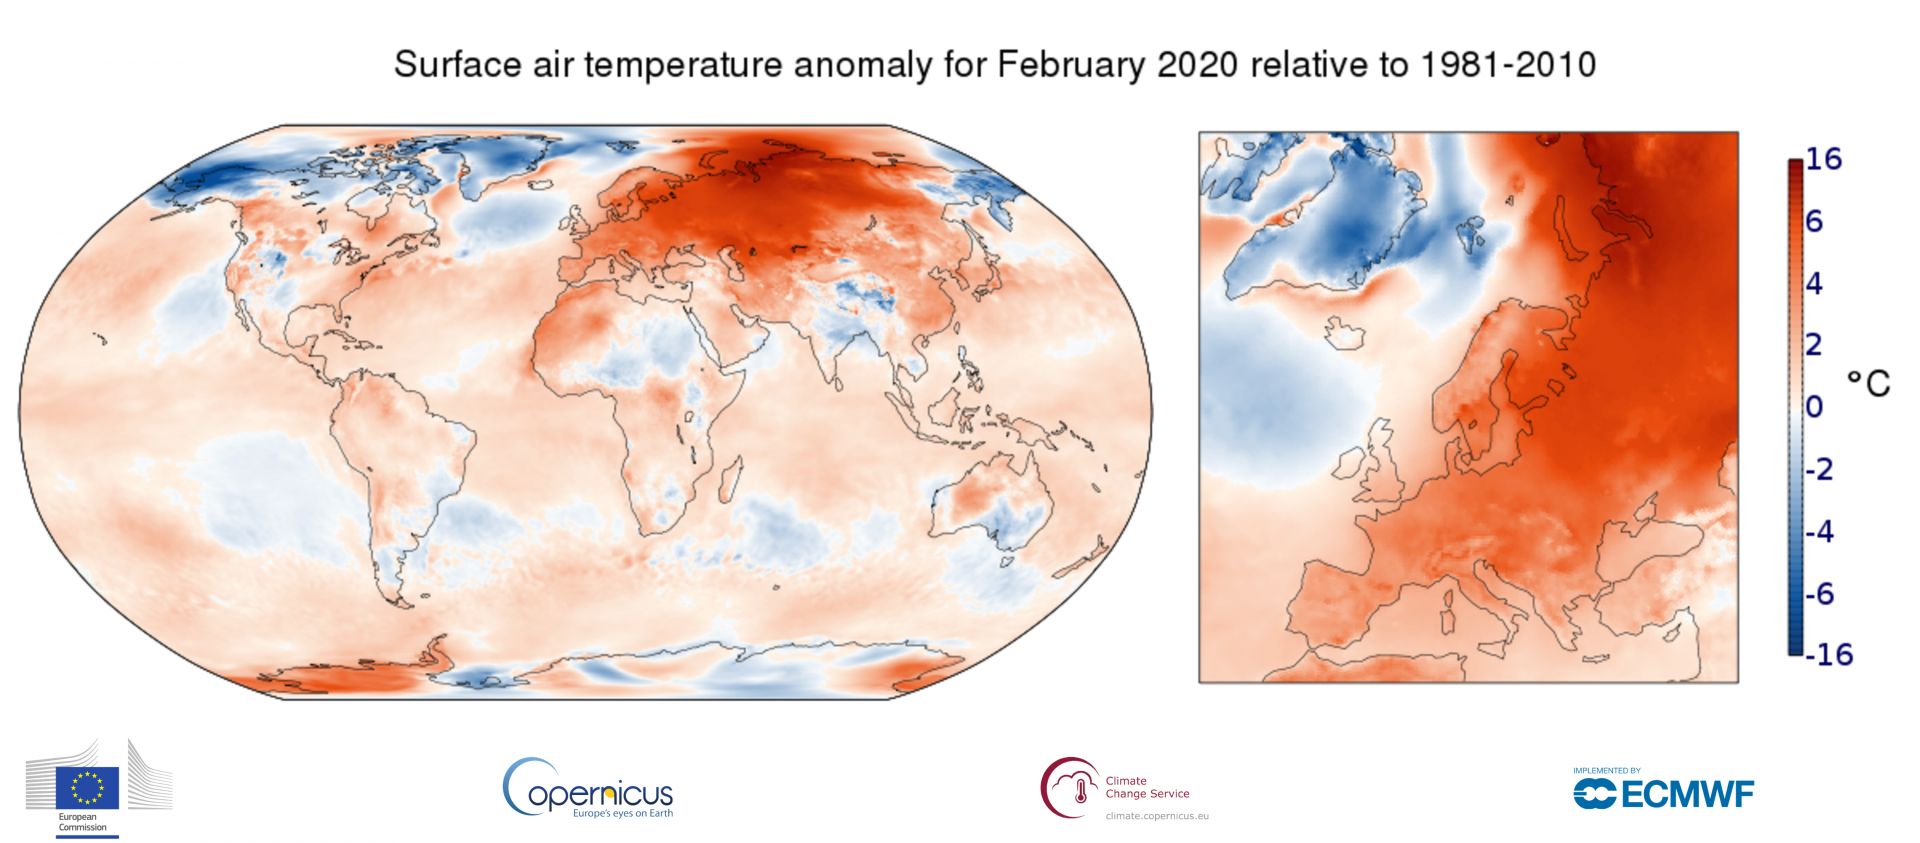 Изминалата зима на 2019/20 беше с уникални положителни аномалии в цялото северно полукълбо